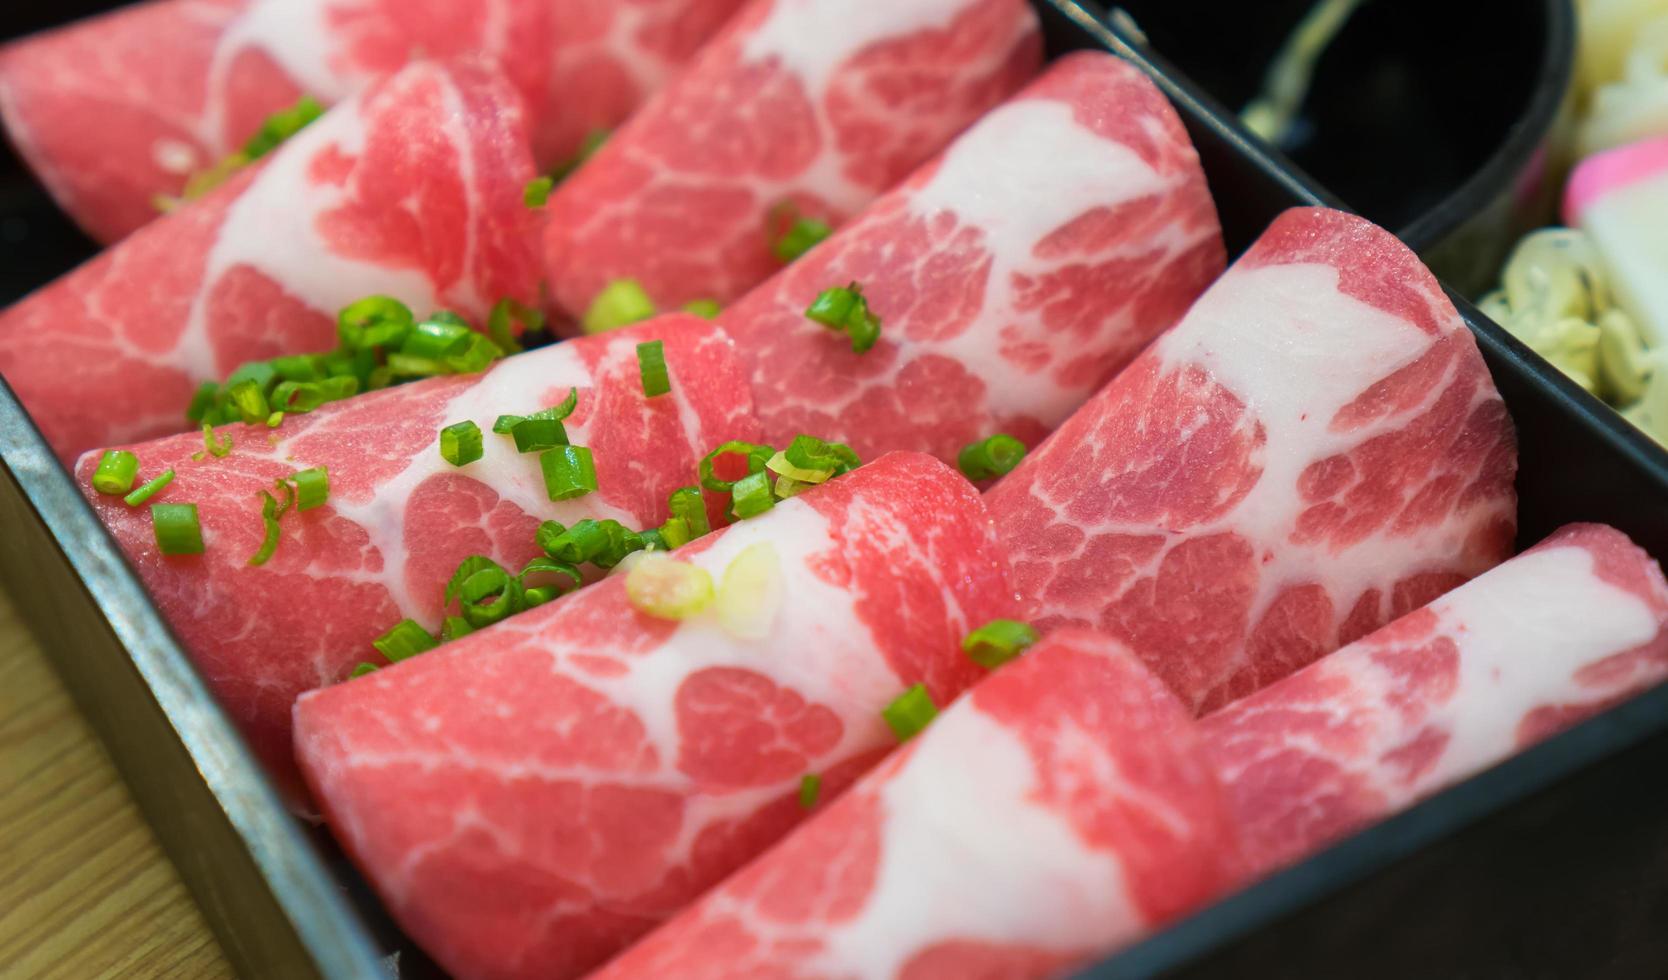 fläsk färsk ny rutschkana i restaurangen, japansk mat och koreansk mat. foto